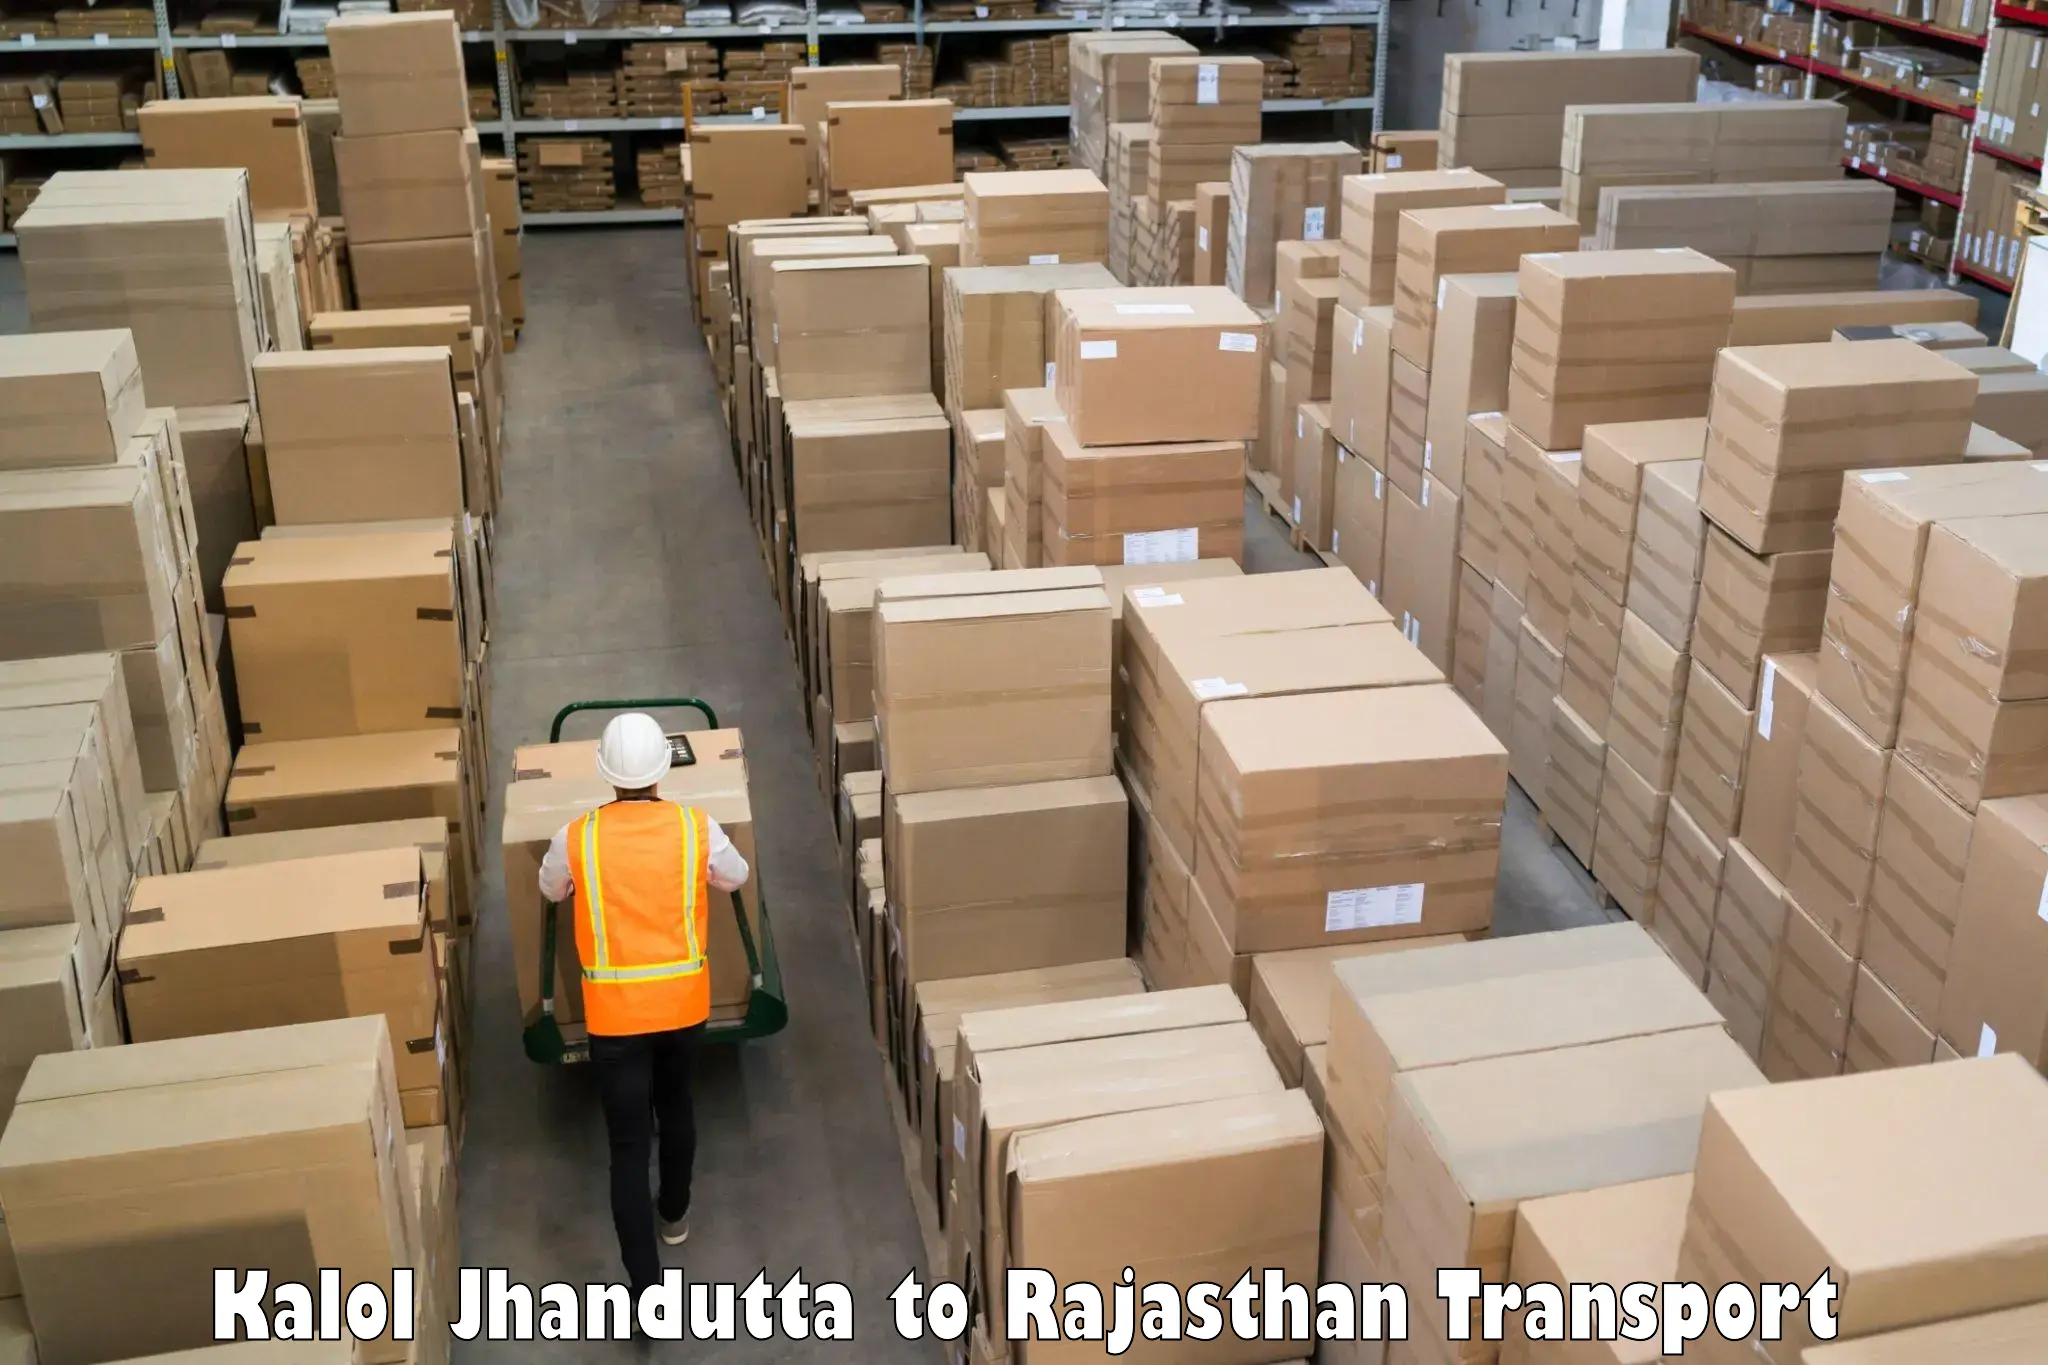 Cargo transportation services Kalol Jhandutta to IIT Jodhpur